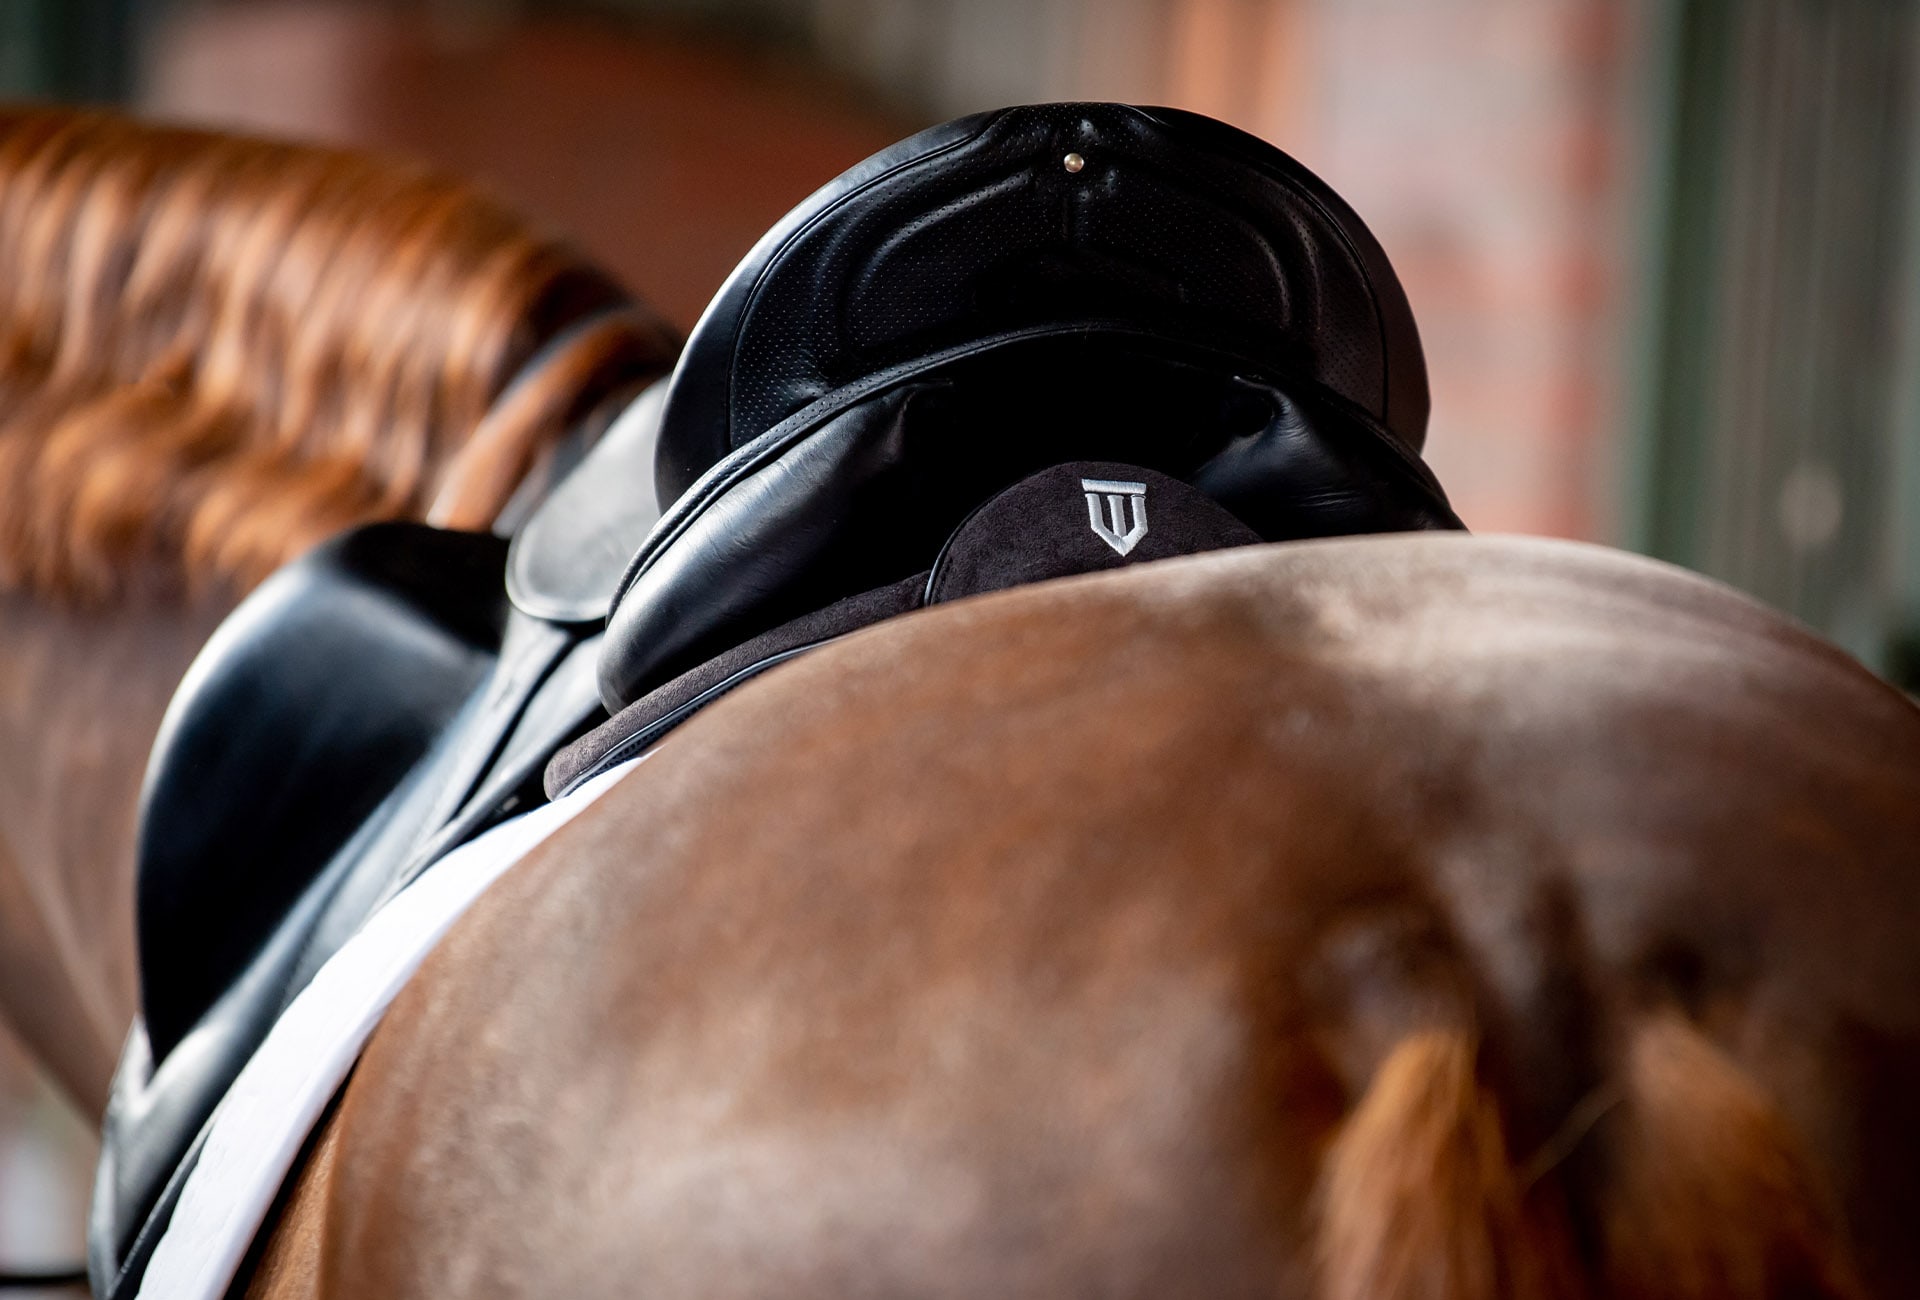 Winderen dressage saddle half pad under the saddle
